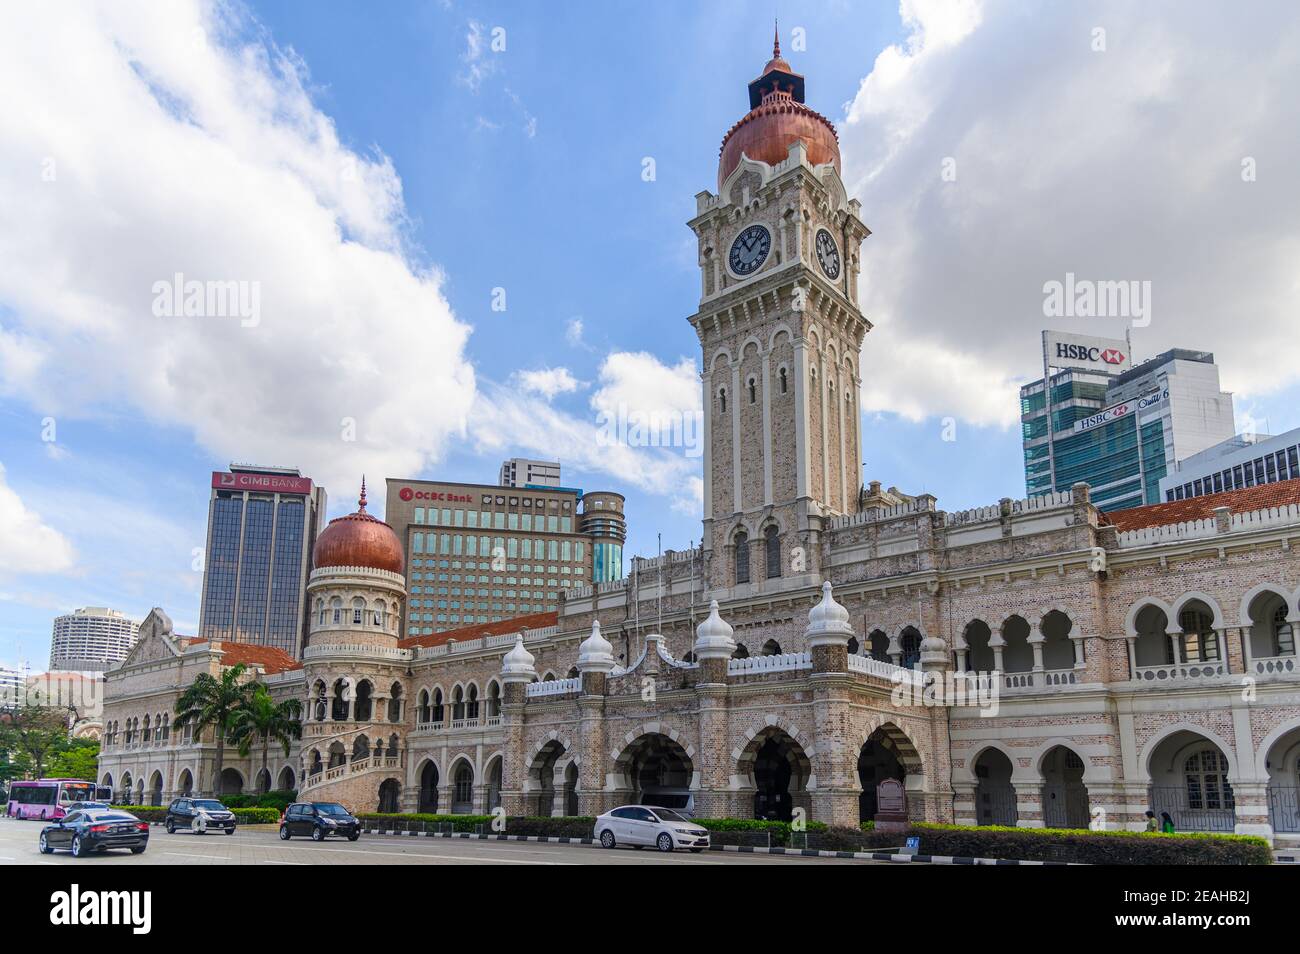 Le bâtiment Sultan Abdul Samad près de la place de l'indépendance à Kuala Lumpur, Malaisie Banque D'Images